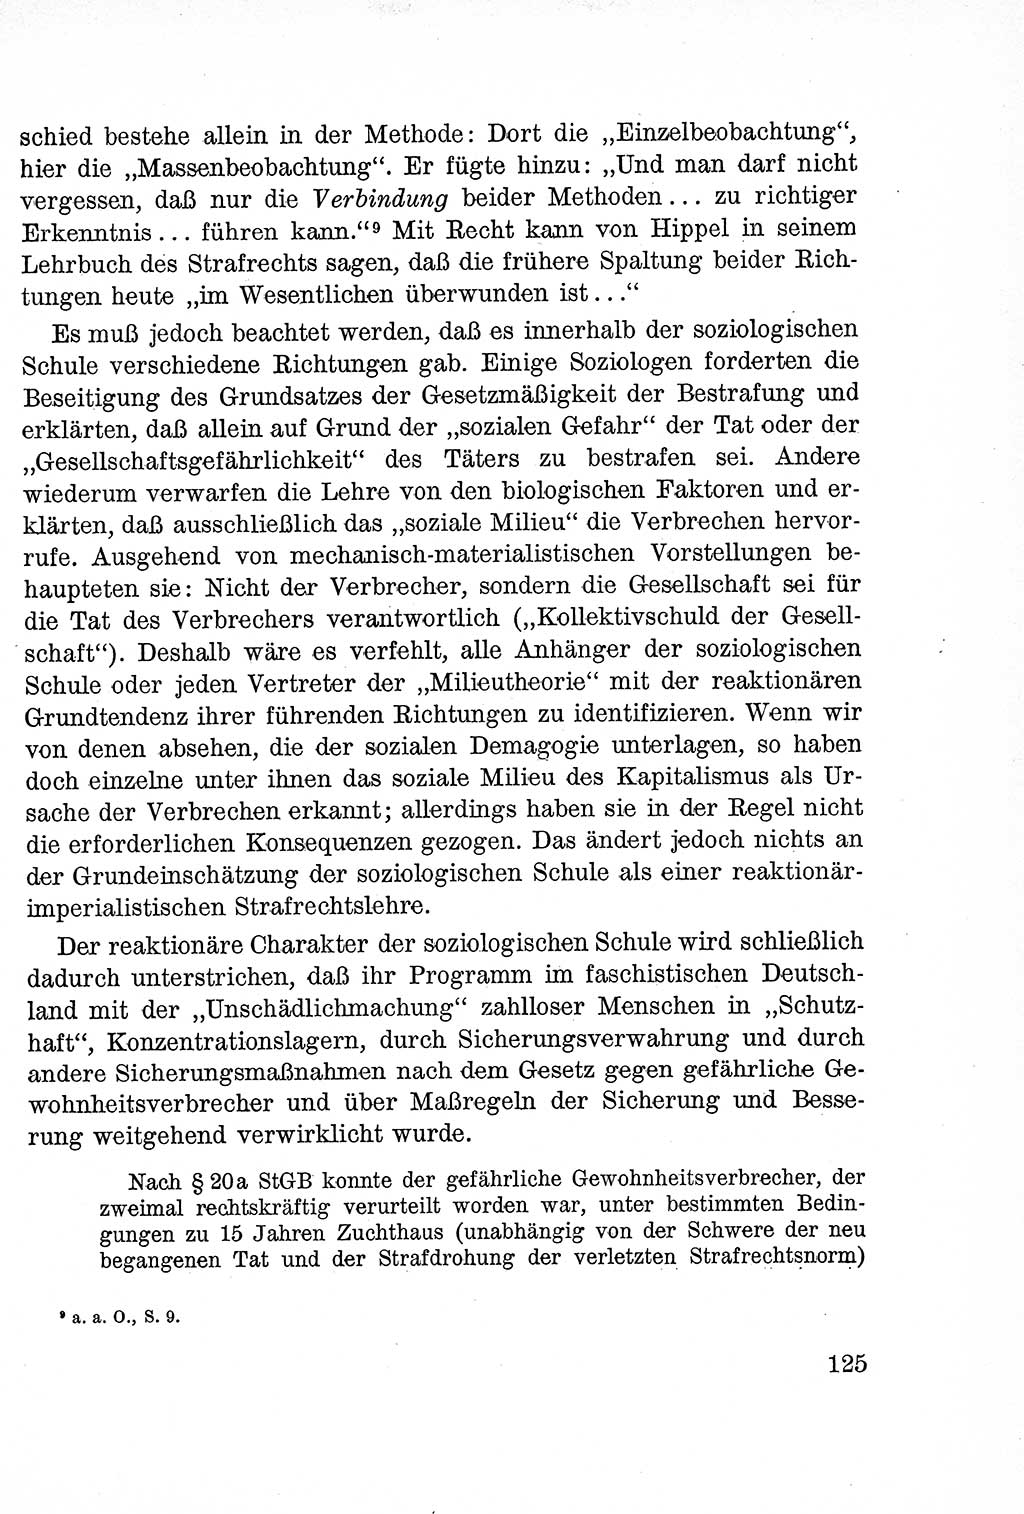 Lehrbuch des Strafrechts der Deutschen Demokratischen Republik (DDR), Allgemeiner Teil 1957, Seite 125 (Lb. Strafr. DDR AT 1957, S. 125)